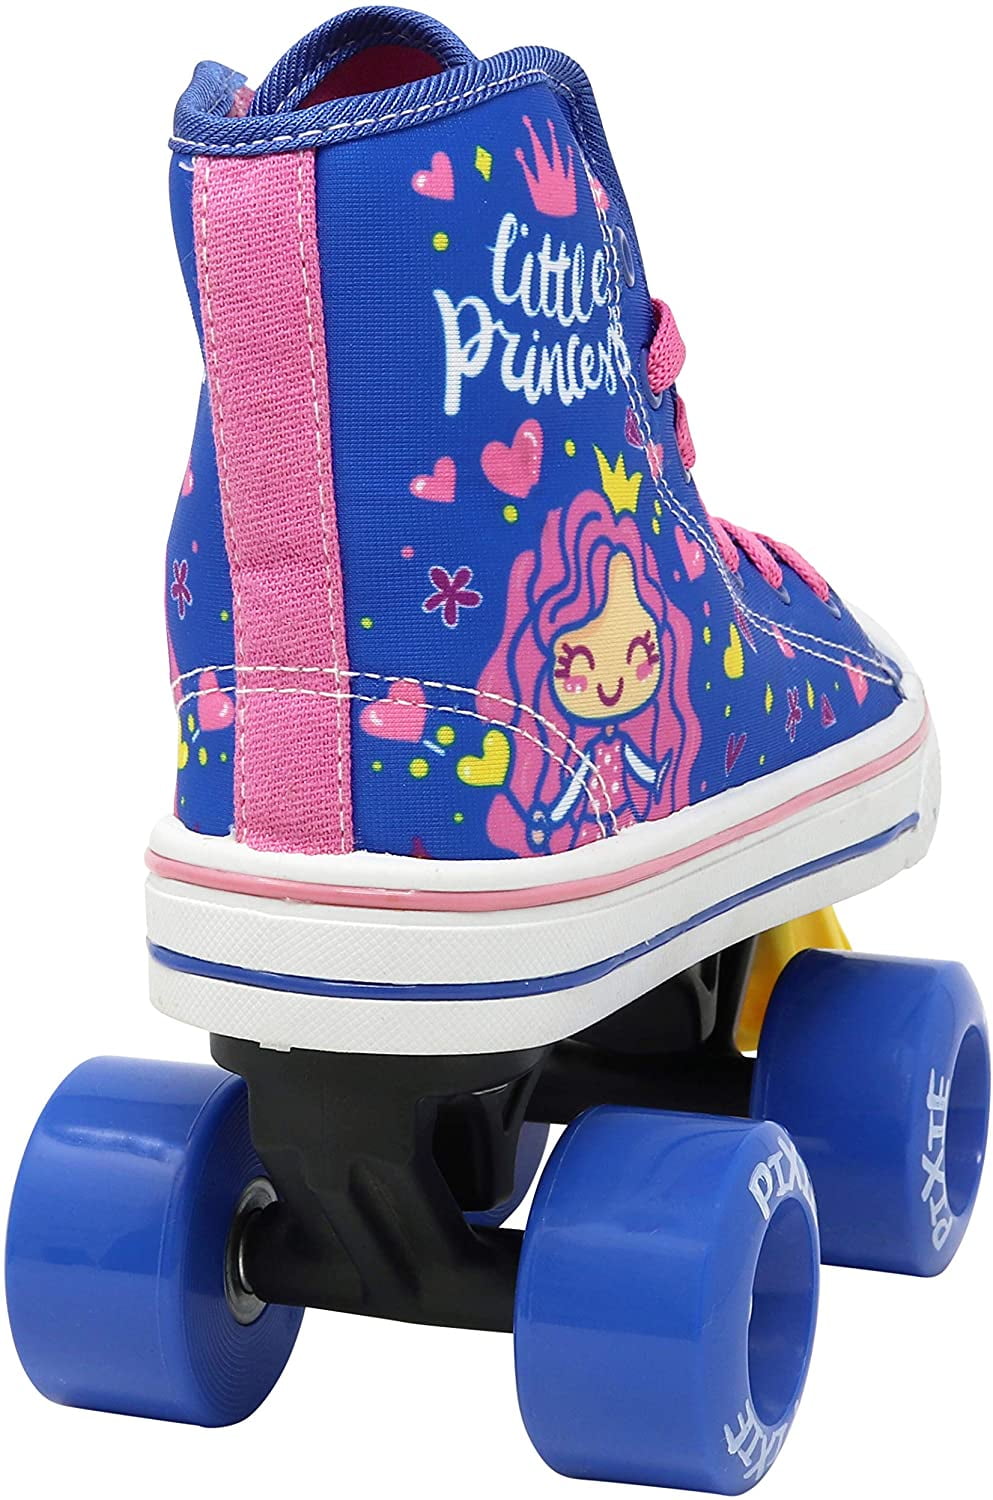 Lenexa Pixie Kids Roller Skates Sizes J10 Kids 4 